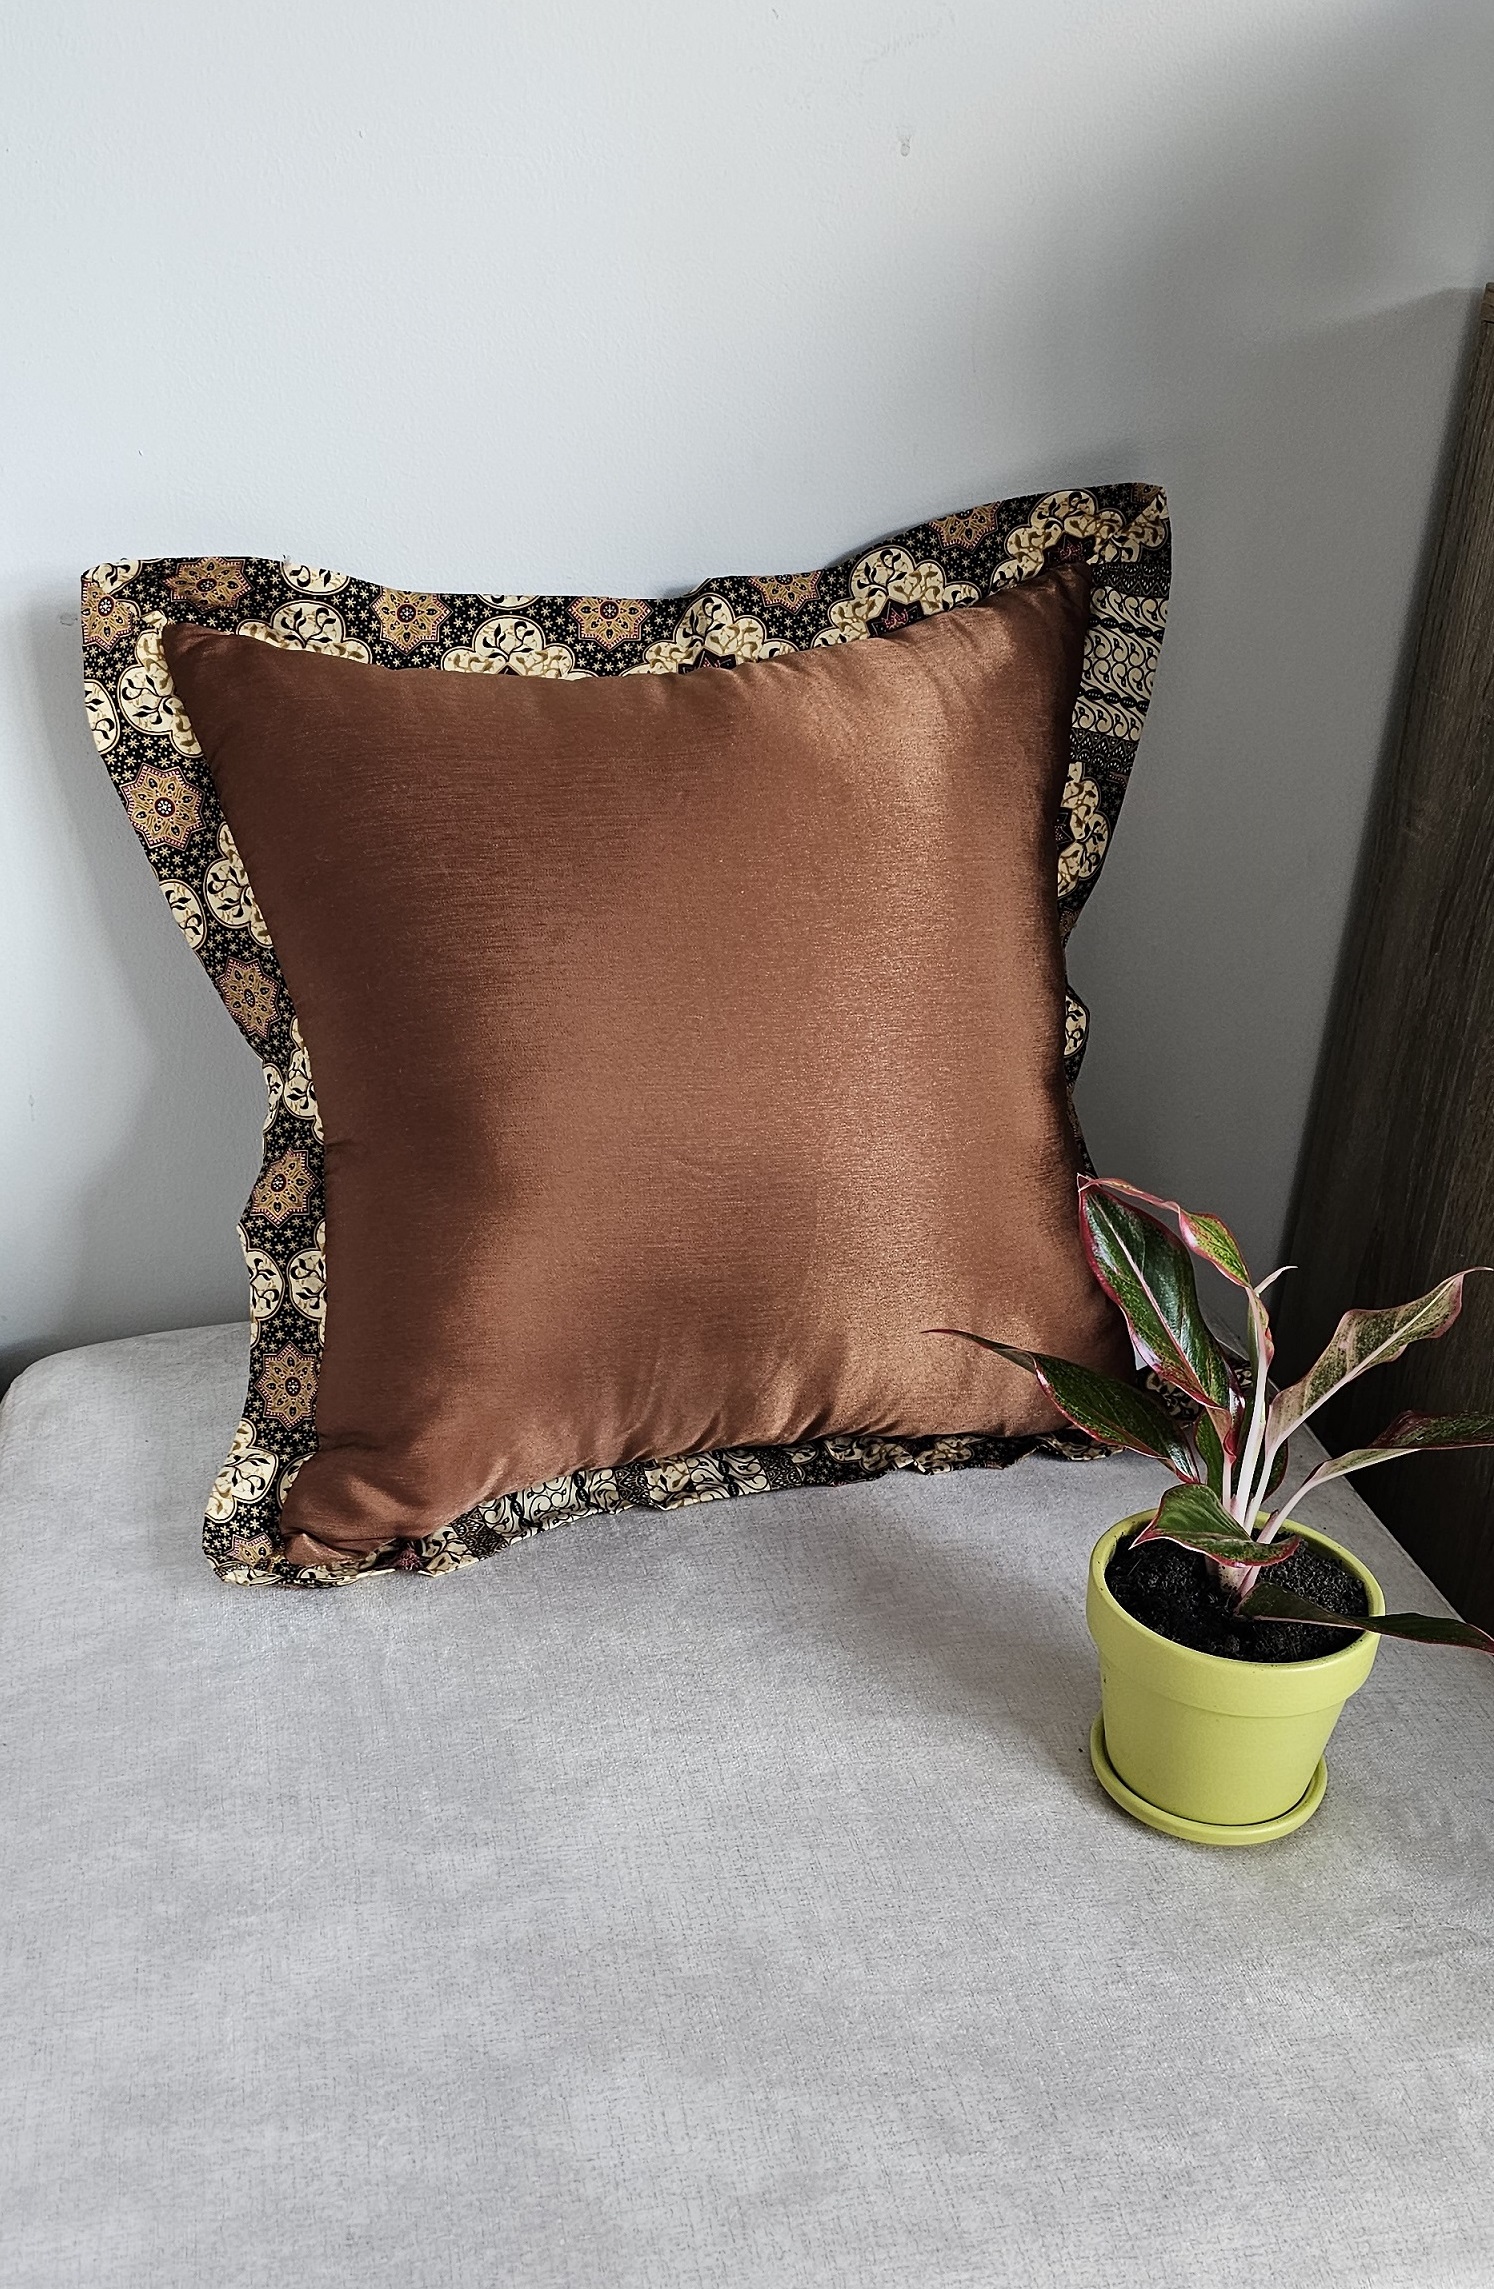 ULA decorative pillow